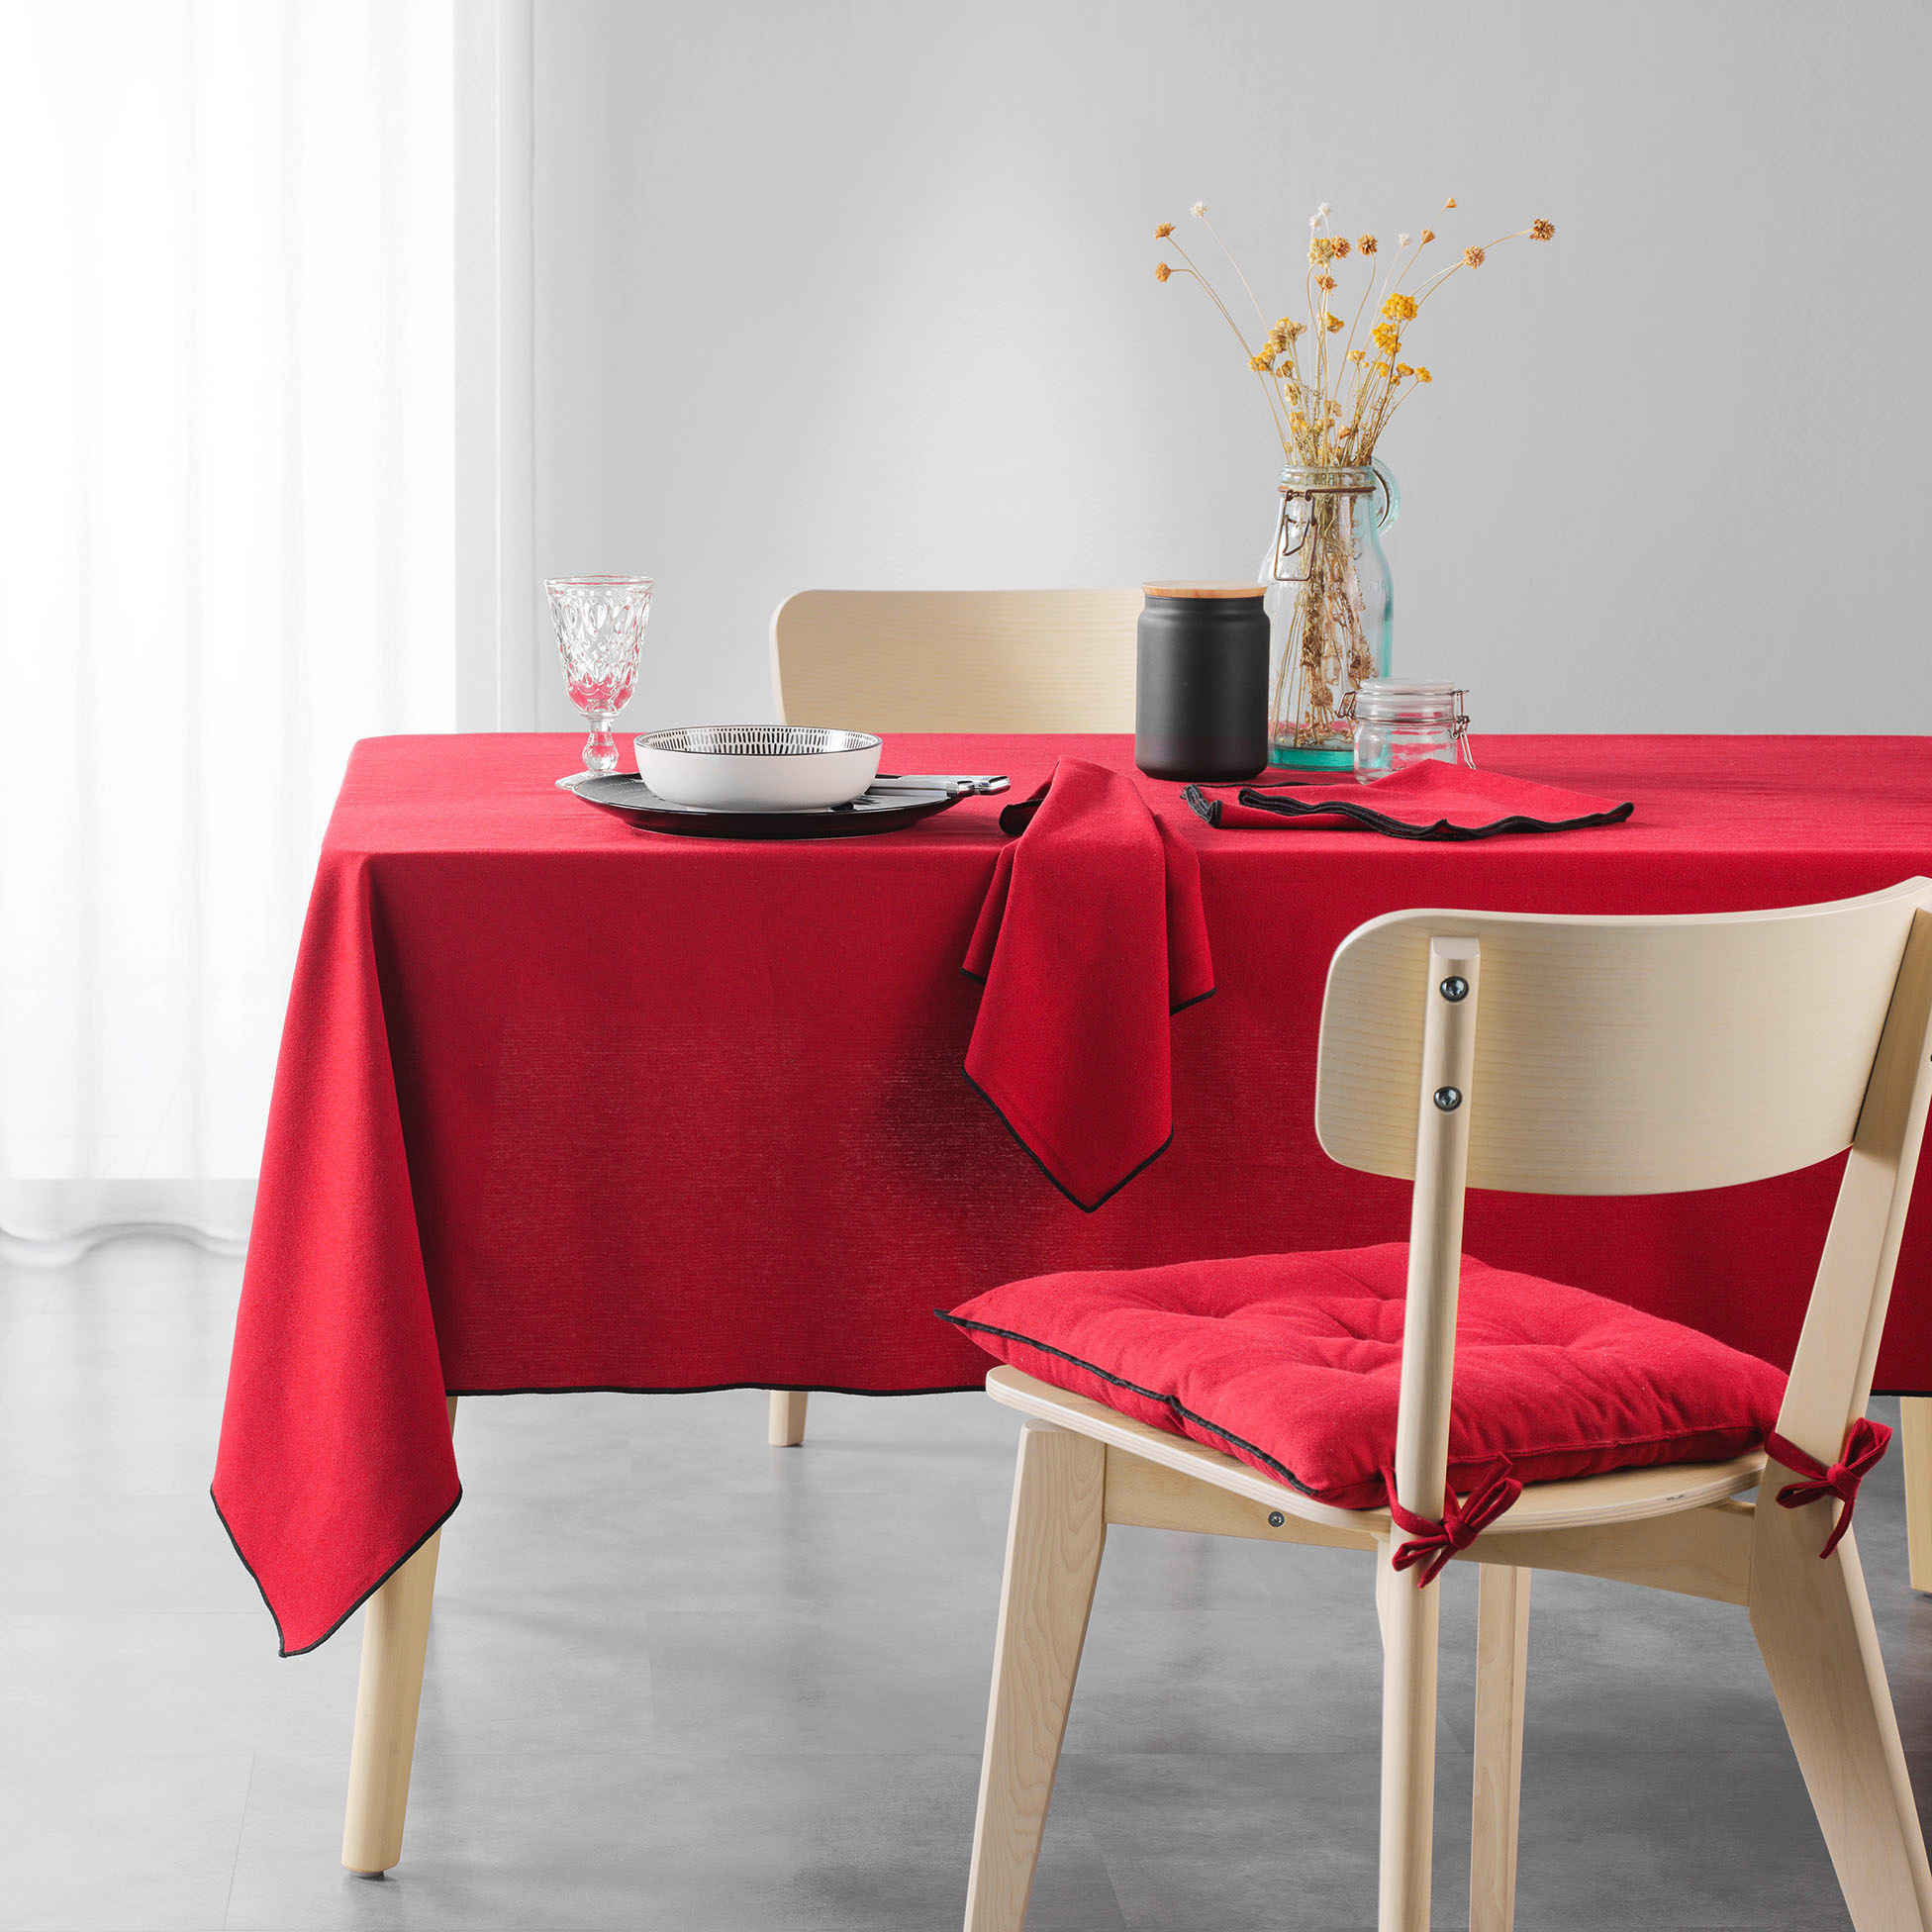 3 Serviettes de table coton recycle 40 x 40 cm Mistralines rouge